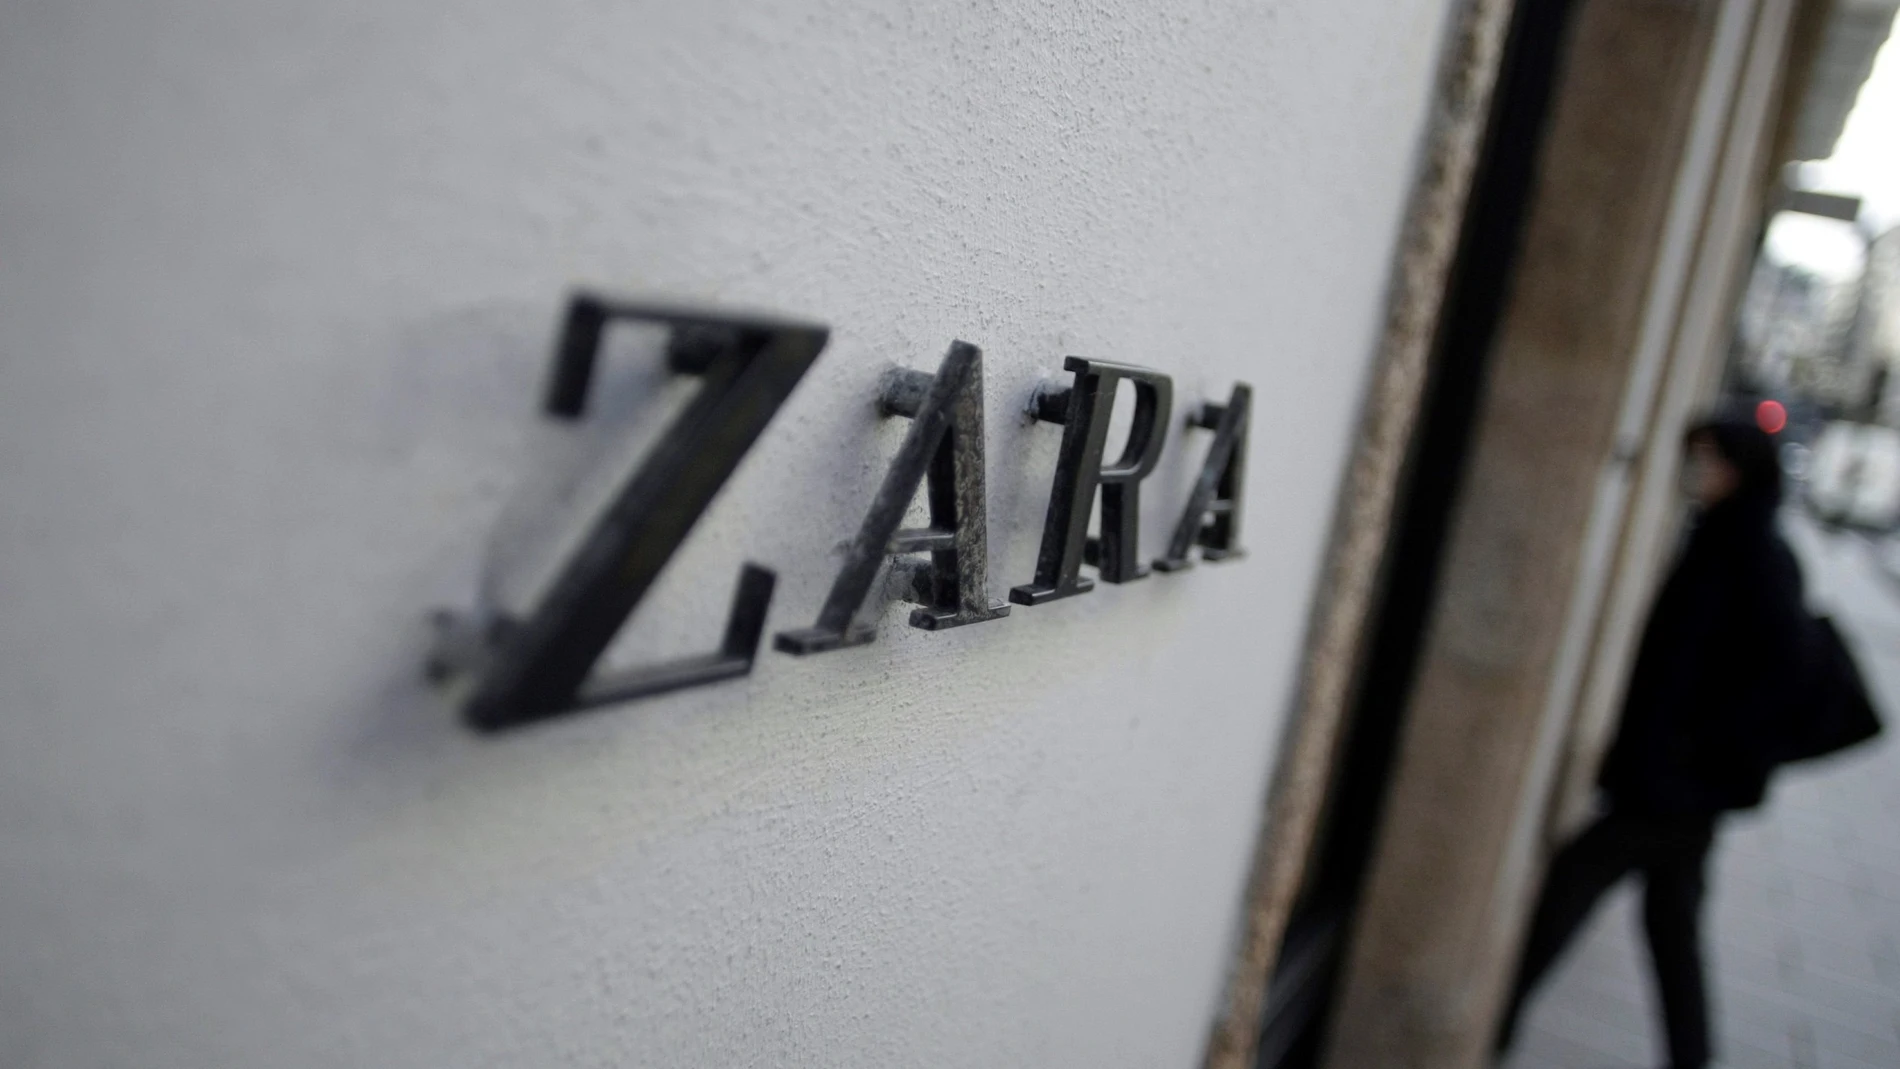 Zara ha sido una de las marcas evaluadas en el estudio